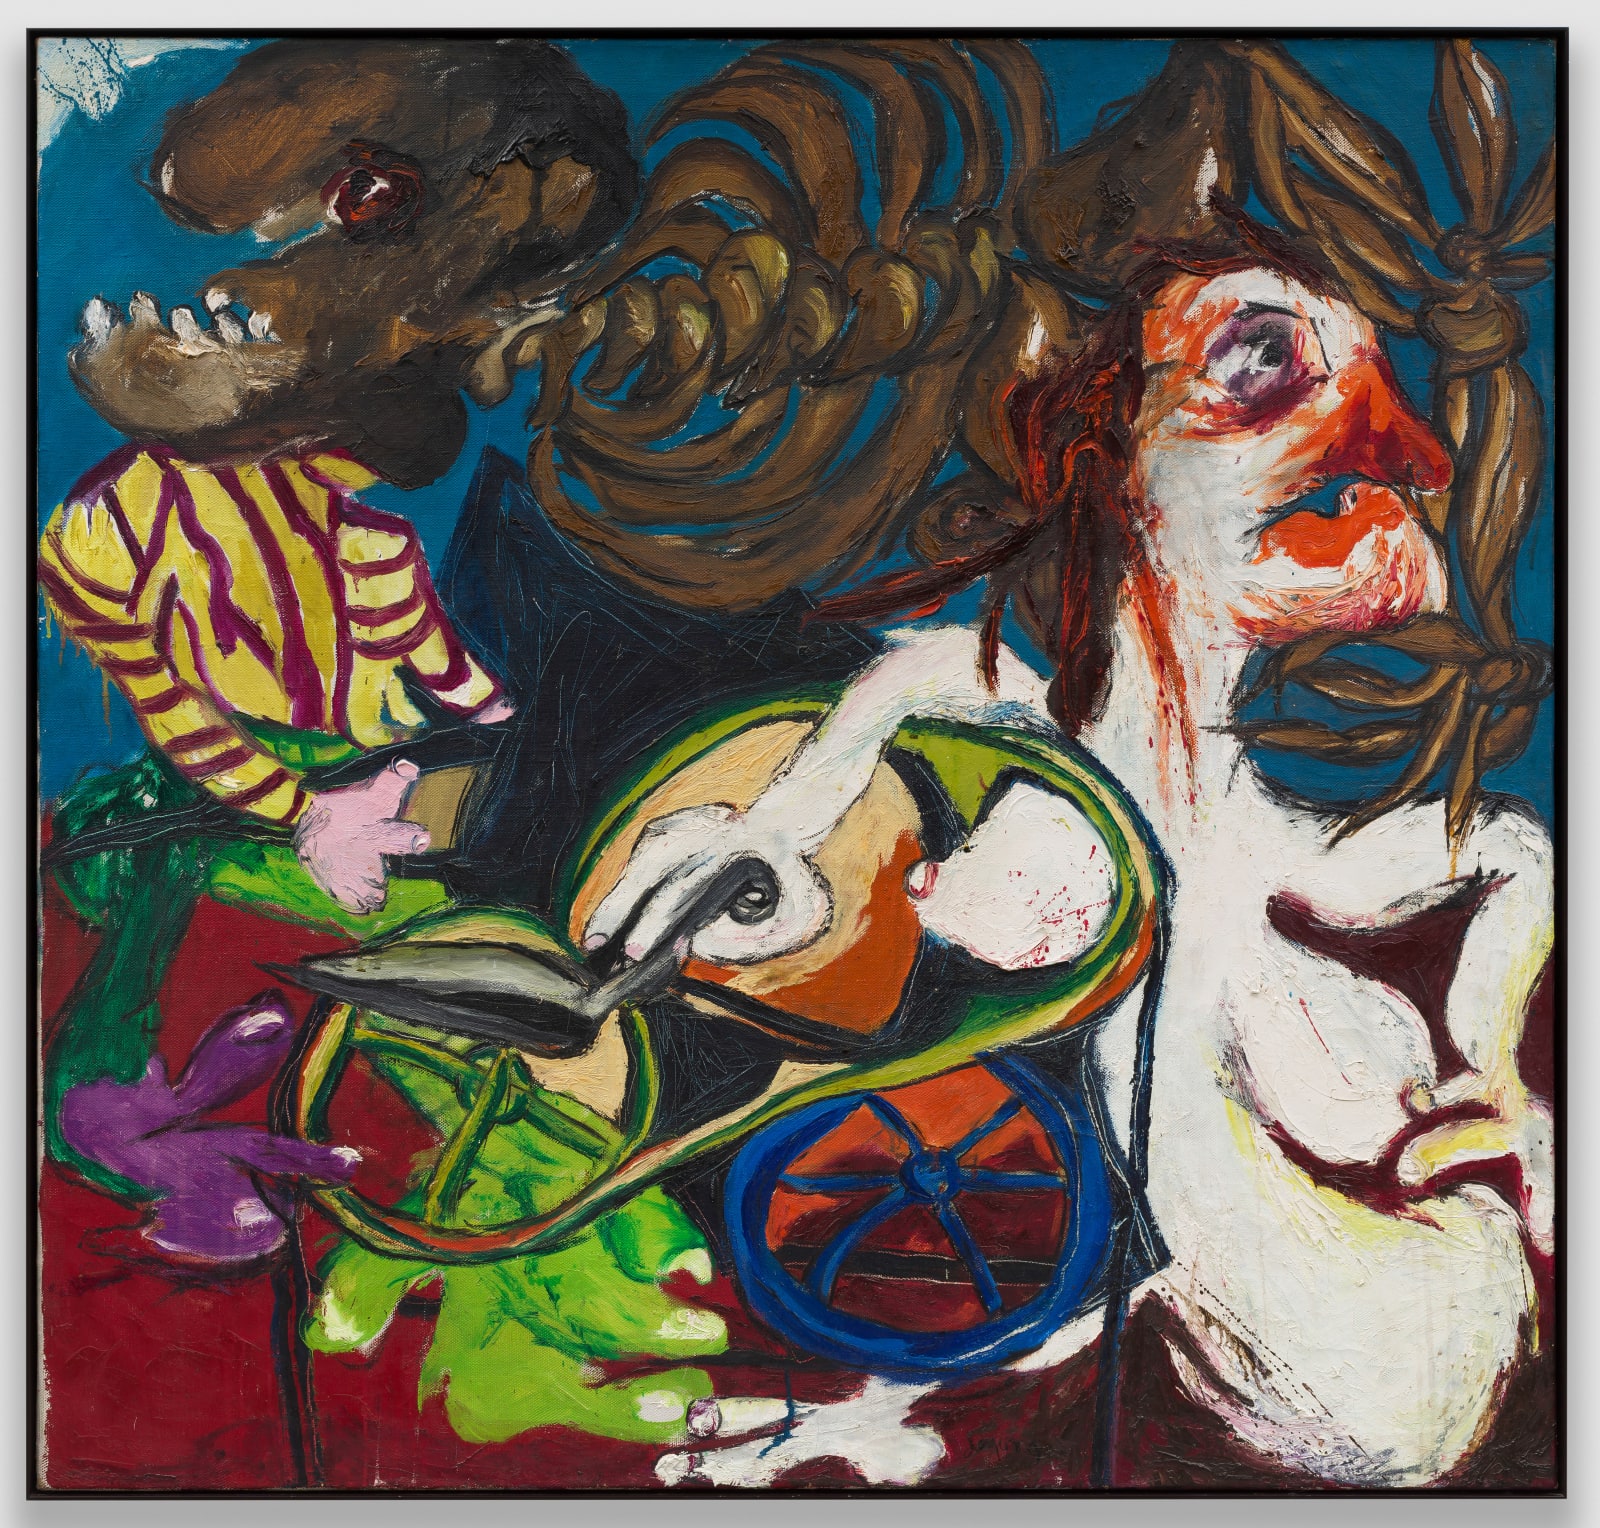 Jacqueline de Jong, Scharesliep (Suicidal Painting Series), 1965